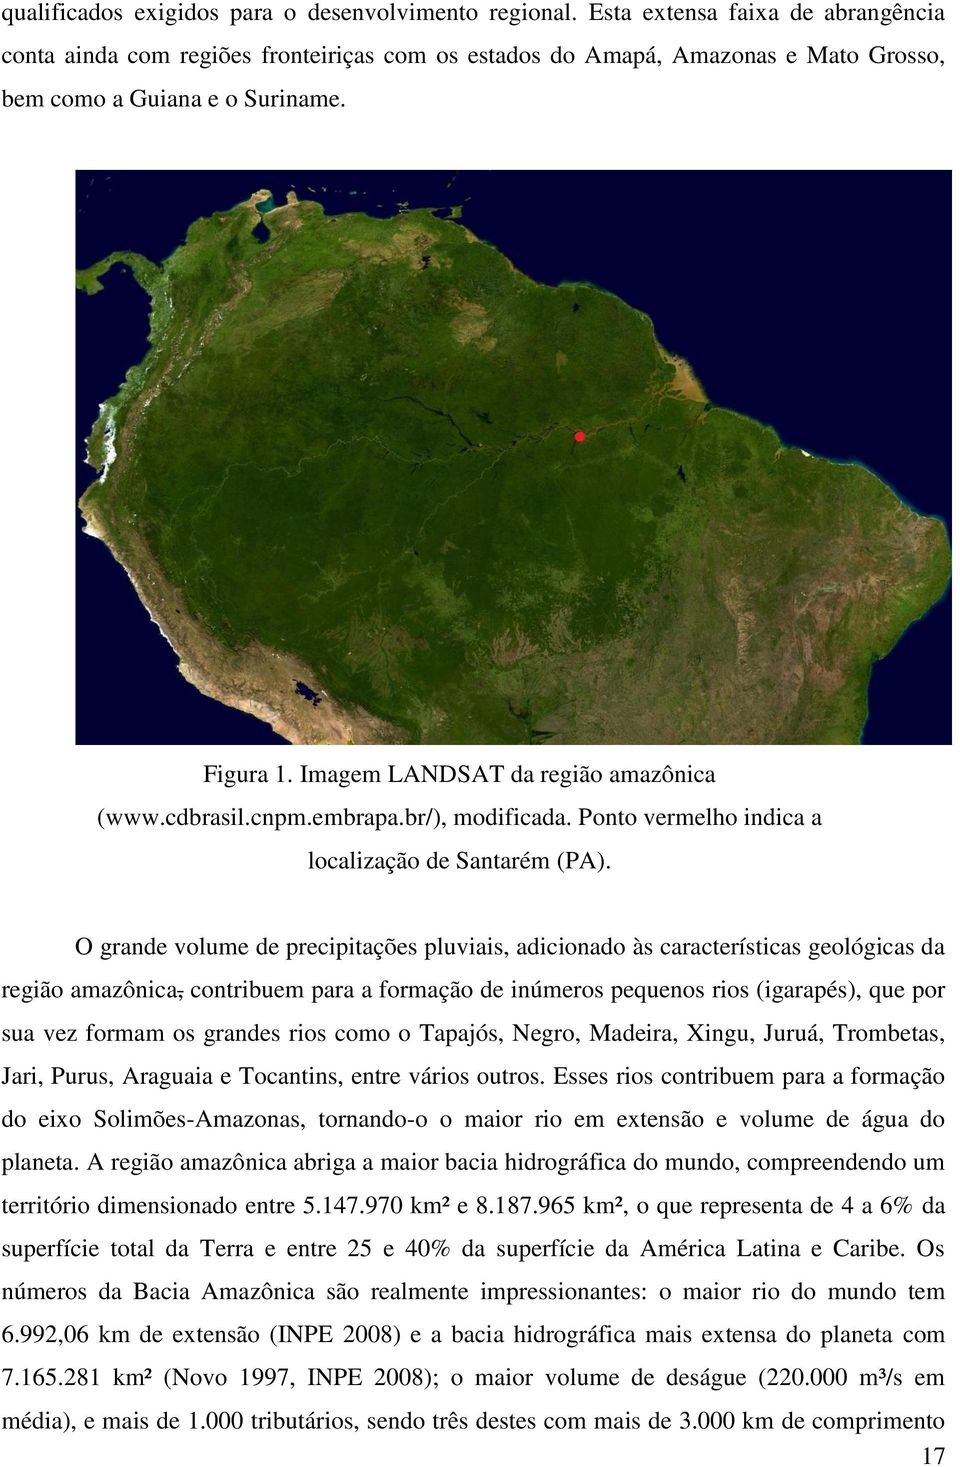 Imagem LANDSAT da região amazônica (www.cdbrasil.cnpm.embrapa.br/), modificada. Ponto vermelho indica a localização de Santarém (PA).